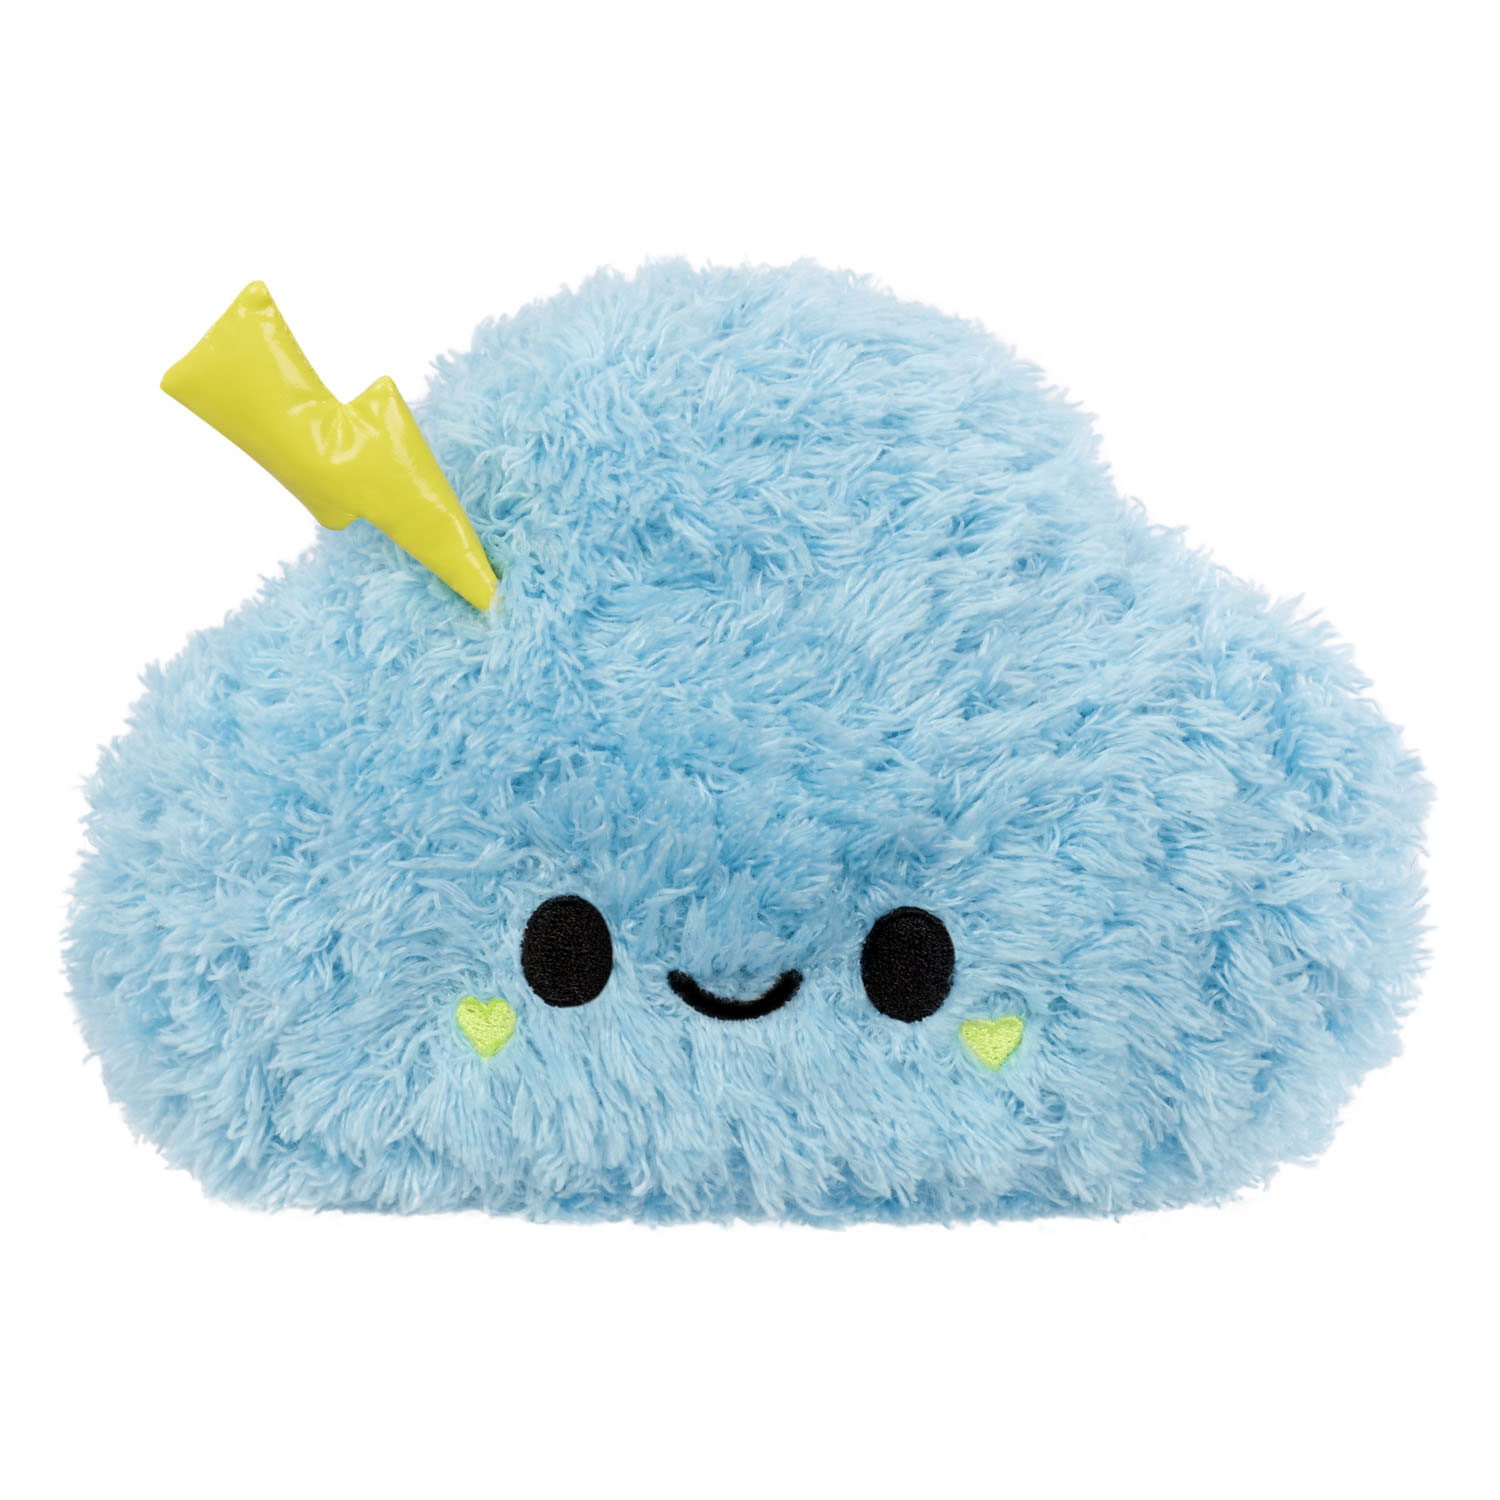 Fluffie Stuffiez Plush Toy - Cloud